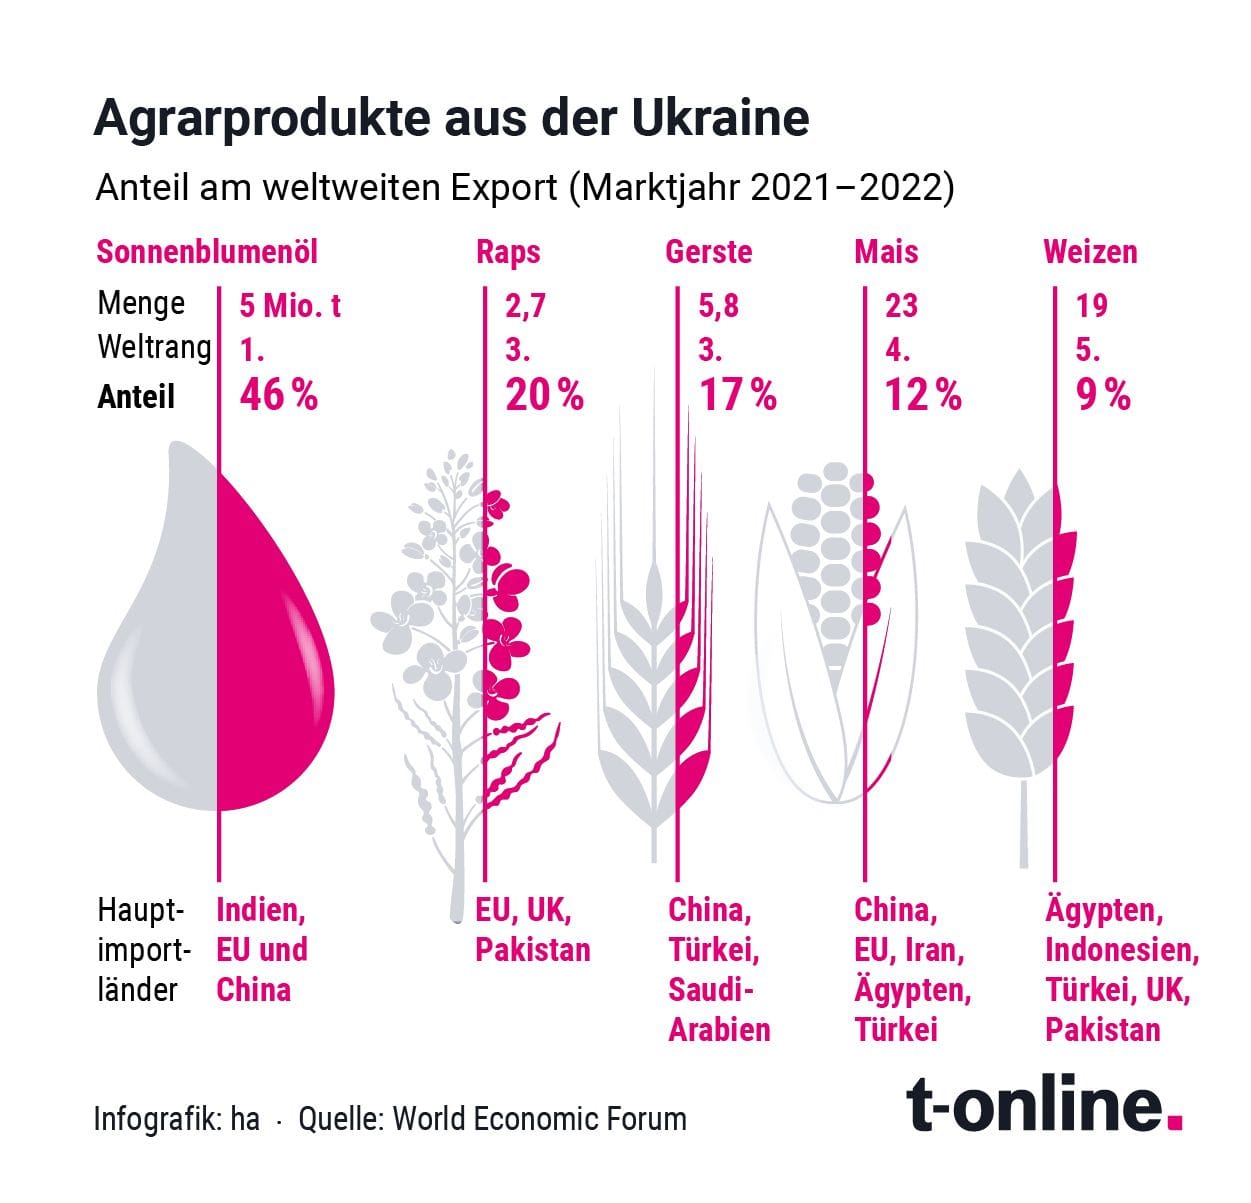 Agrarprodukte aus der Ukraine: Der Anteil am weltweiten Exportmarkt war in den vergangenen Jahren insbesondere beim Sonnenblumenöl gewaltig.